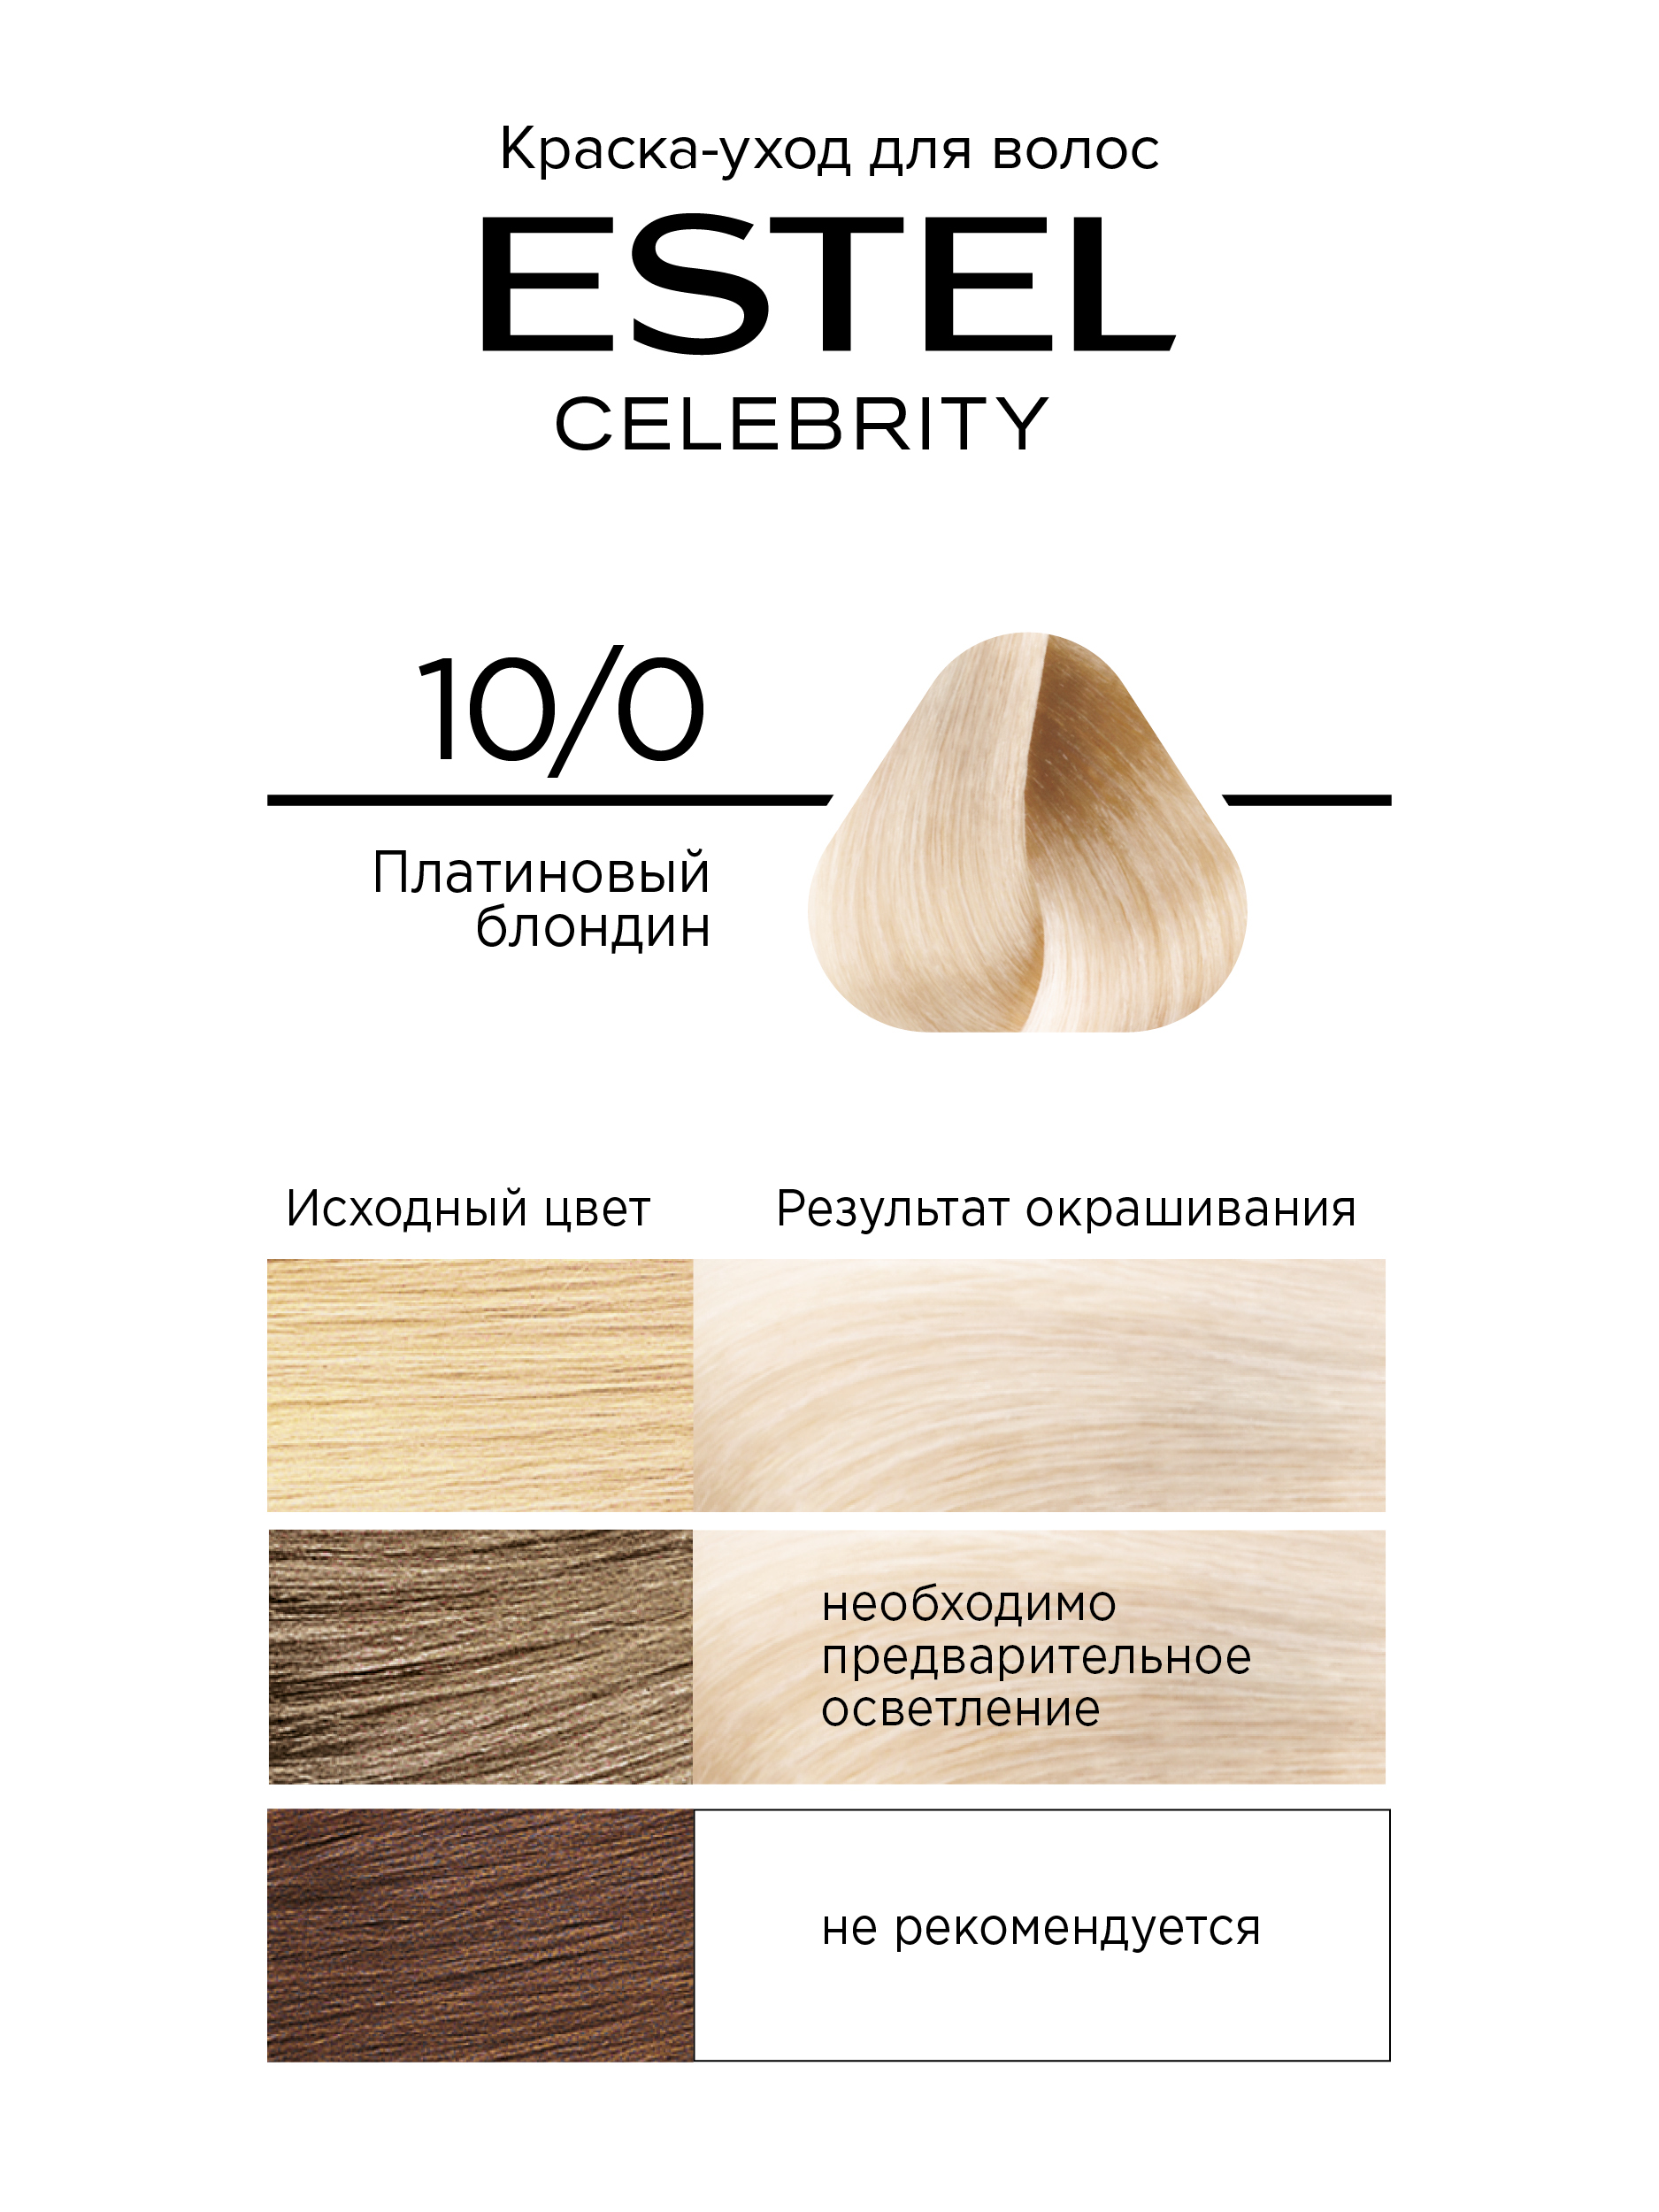 Краска для волос Estel Celebrity тон 10.0 платиновый блондин